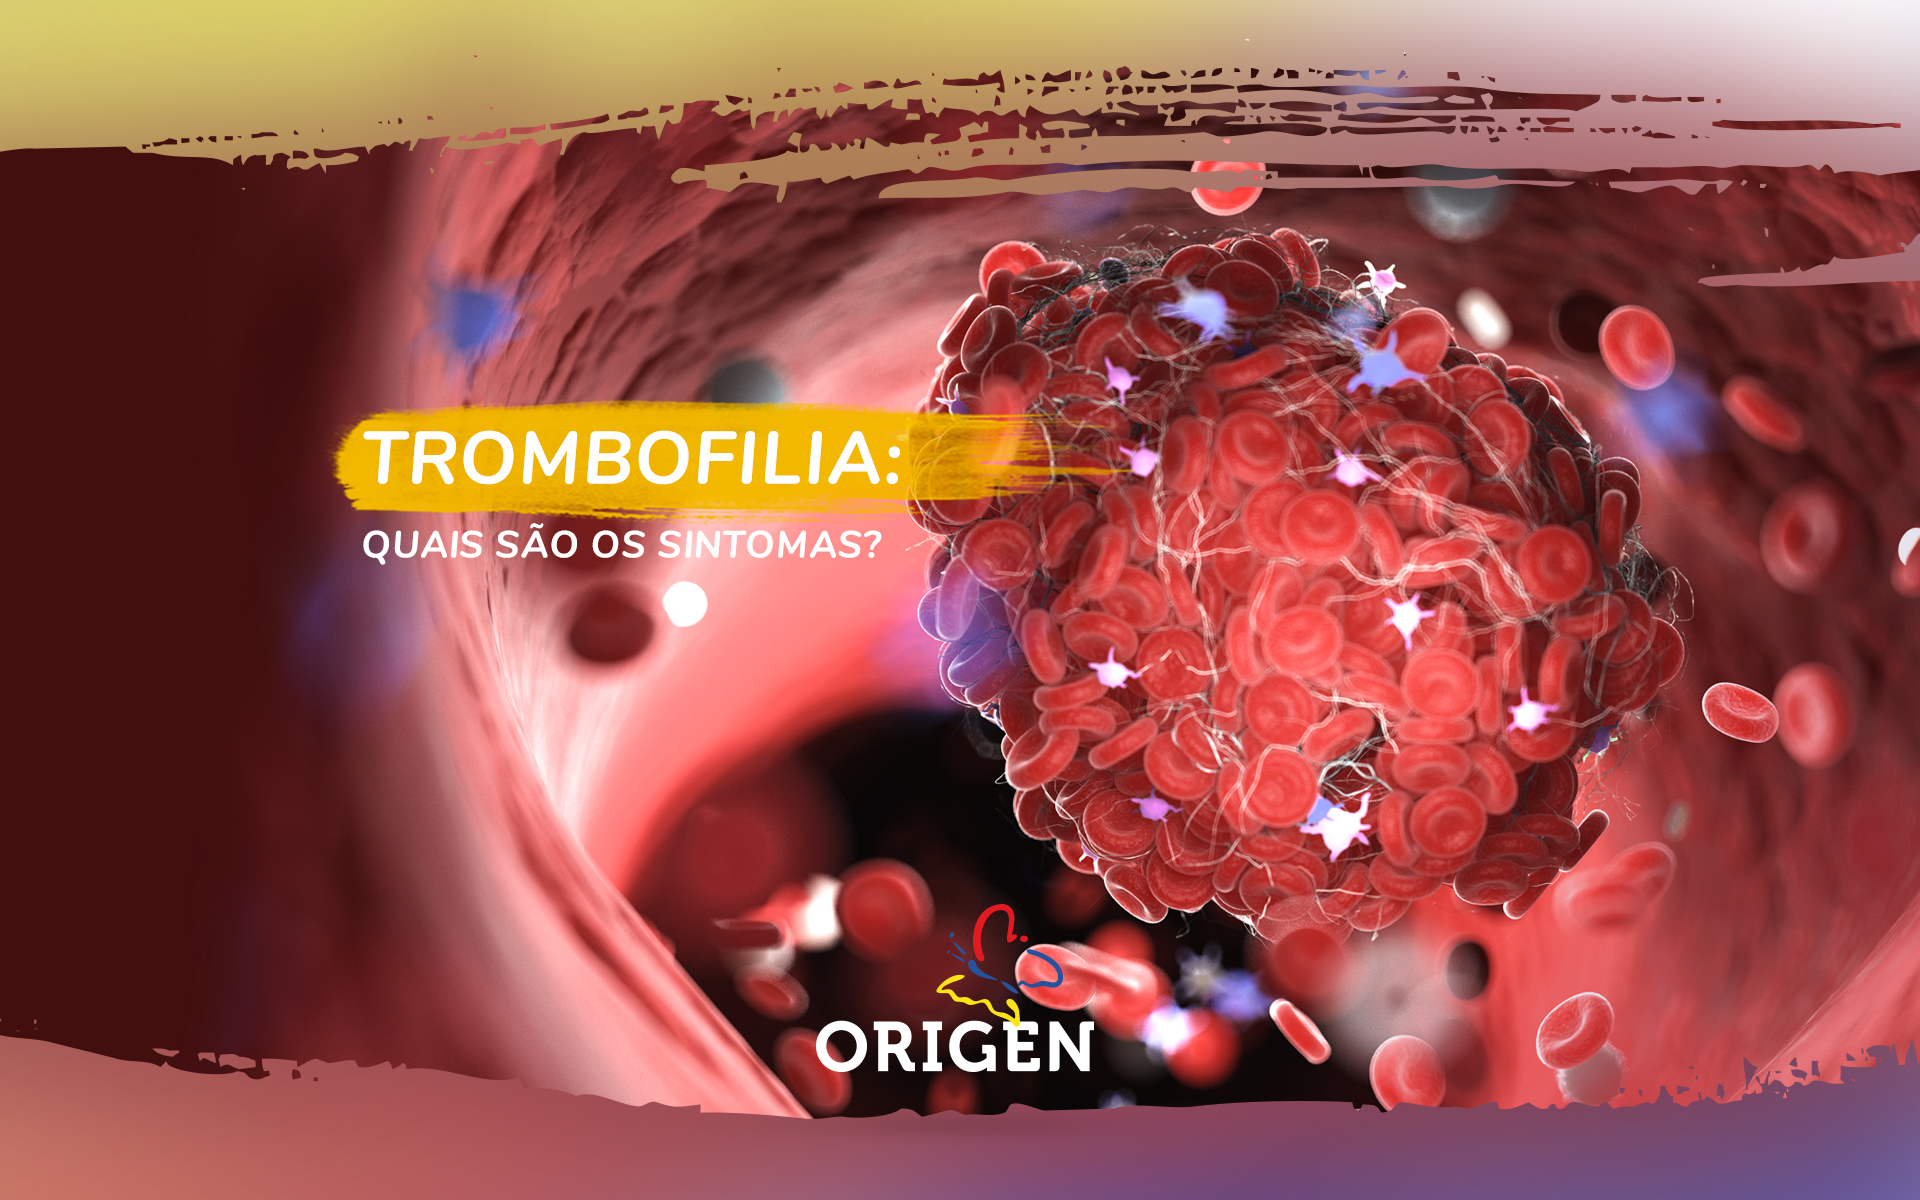 Trombofilia: quais são os sintomas?